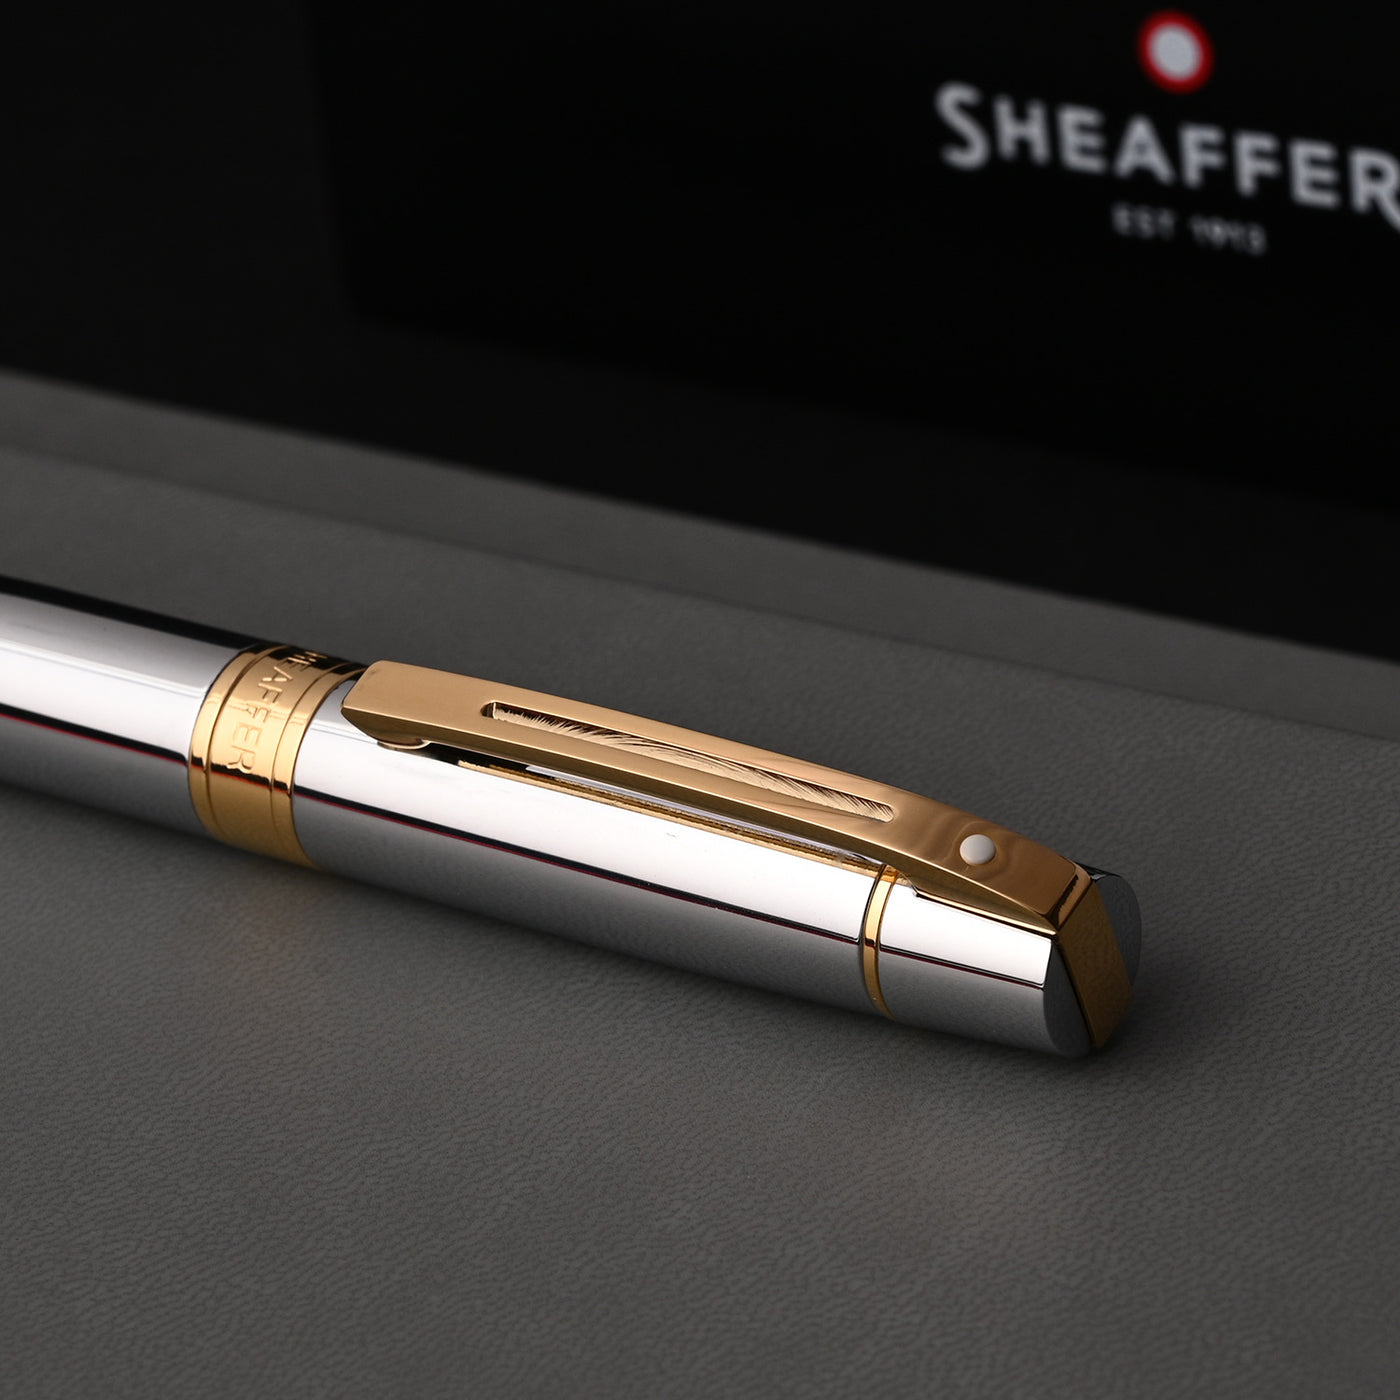 Sheaffer 300 Ball Pen - Bright Chrome GT 10